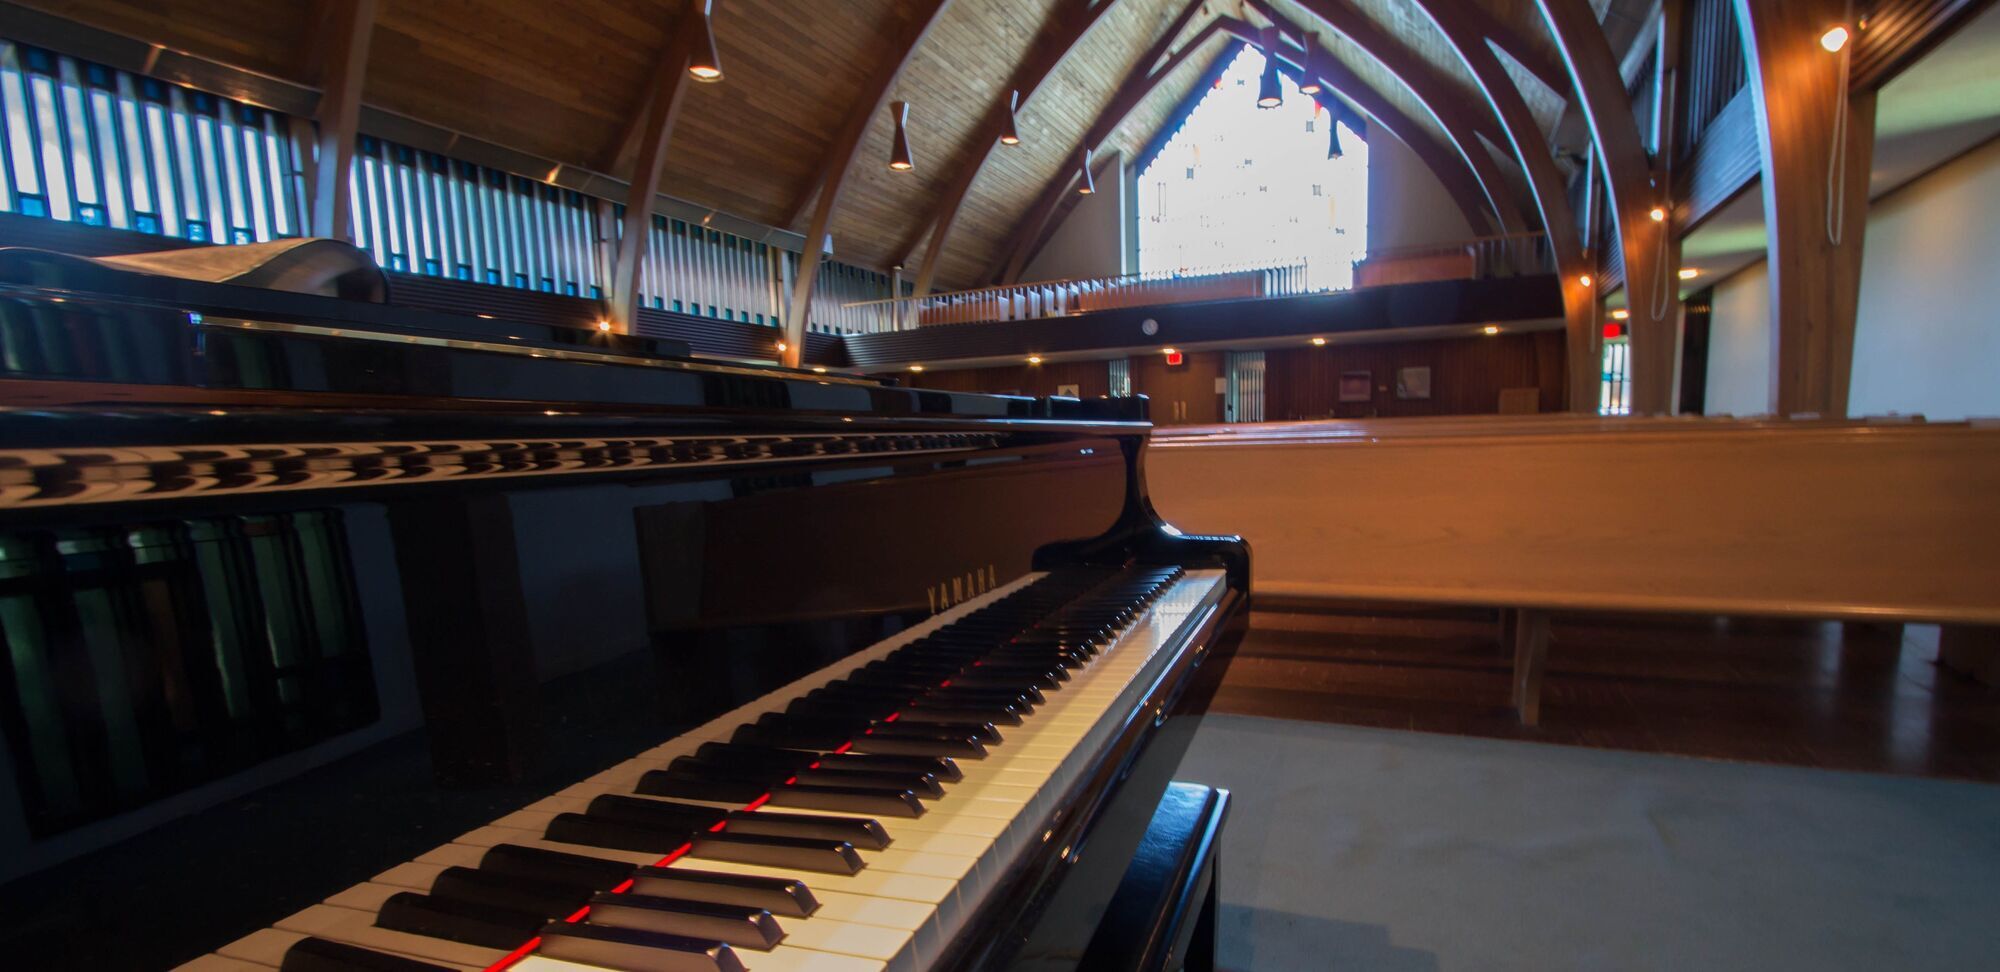 Grande Piano Inside Sanctuary